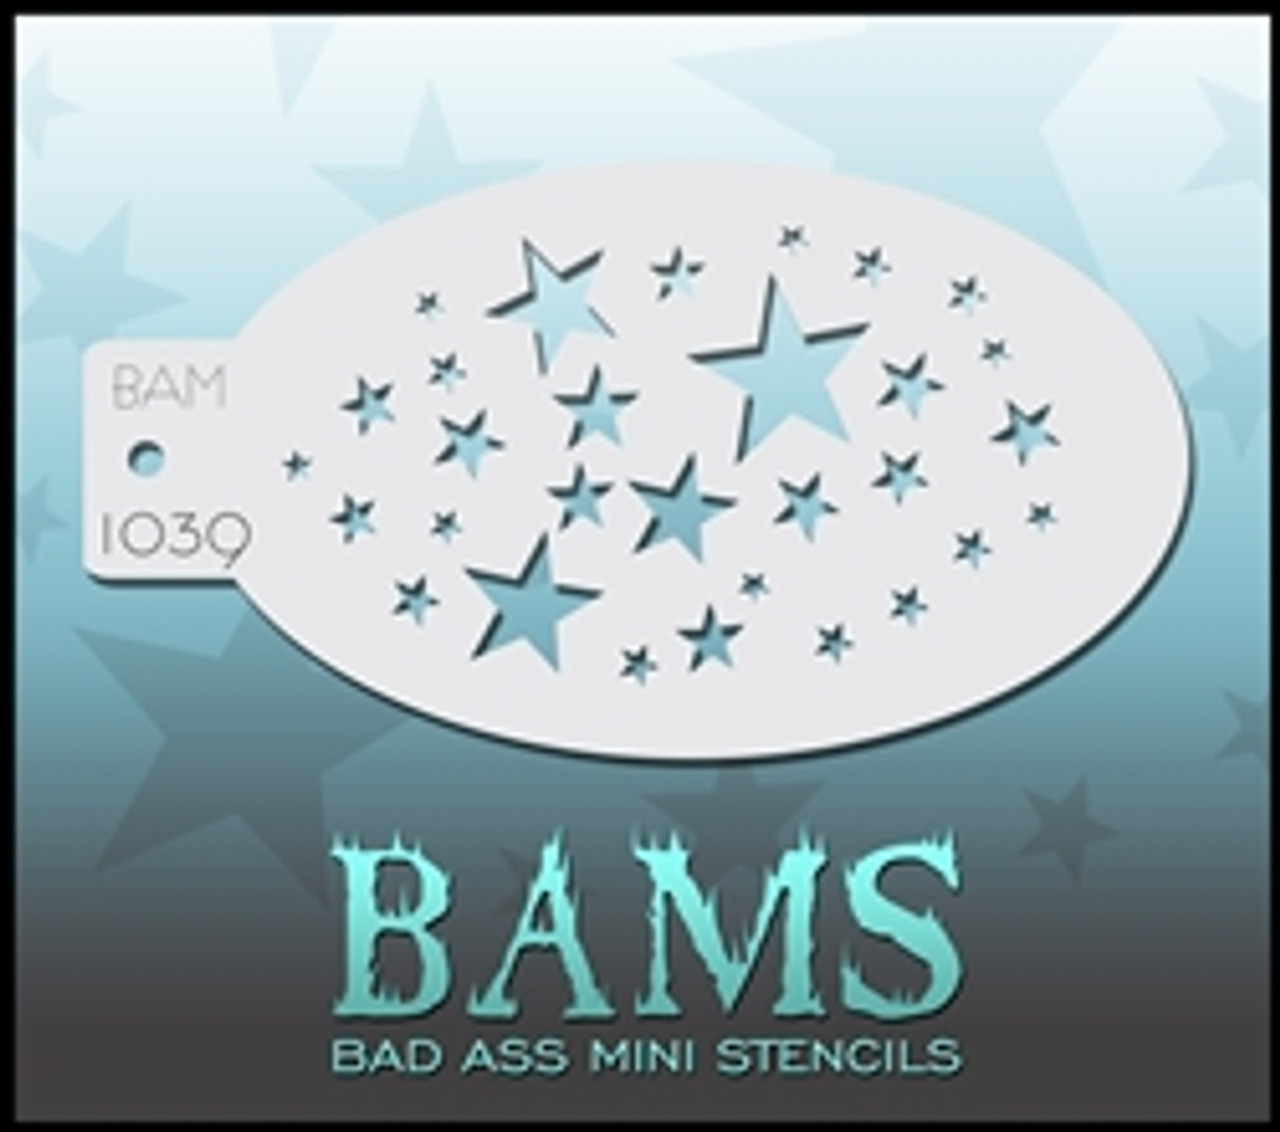 1039 Bad Ass Mini Stencil